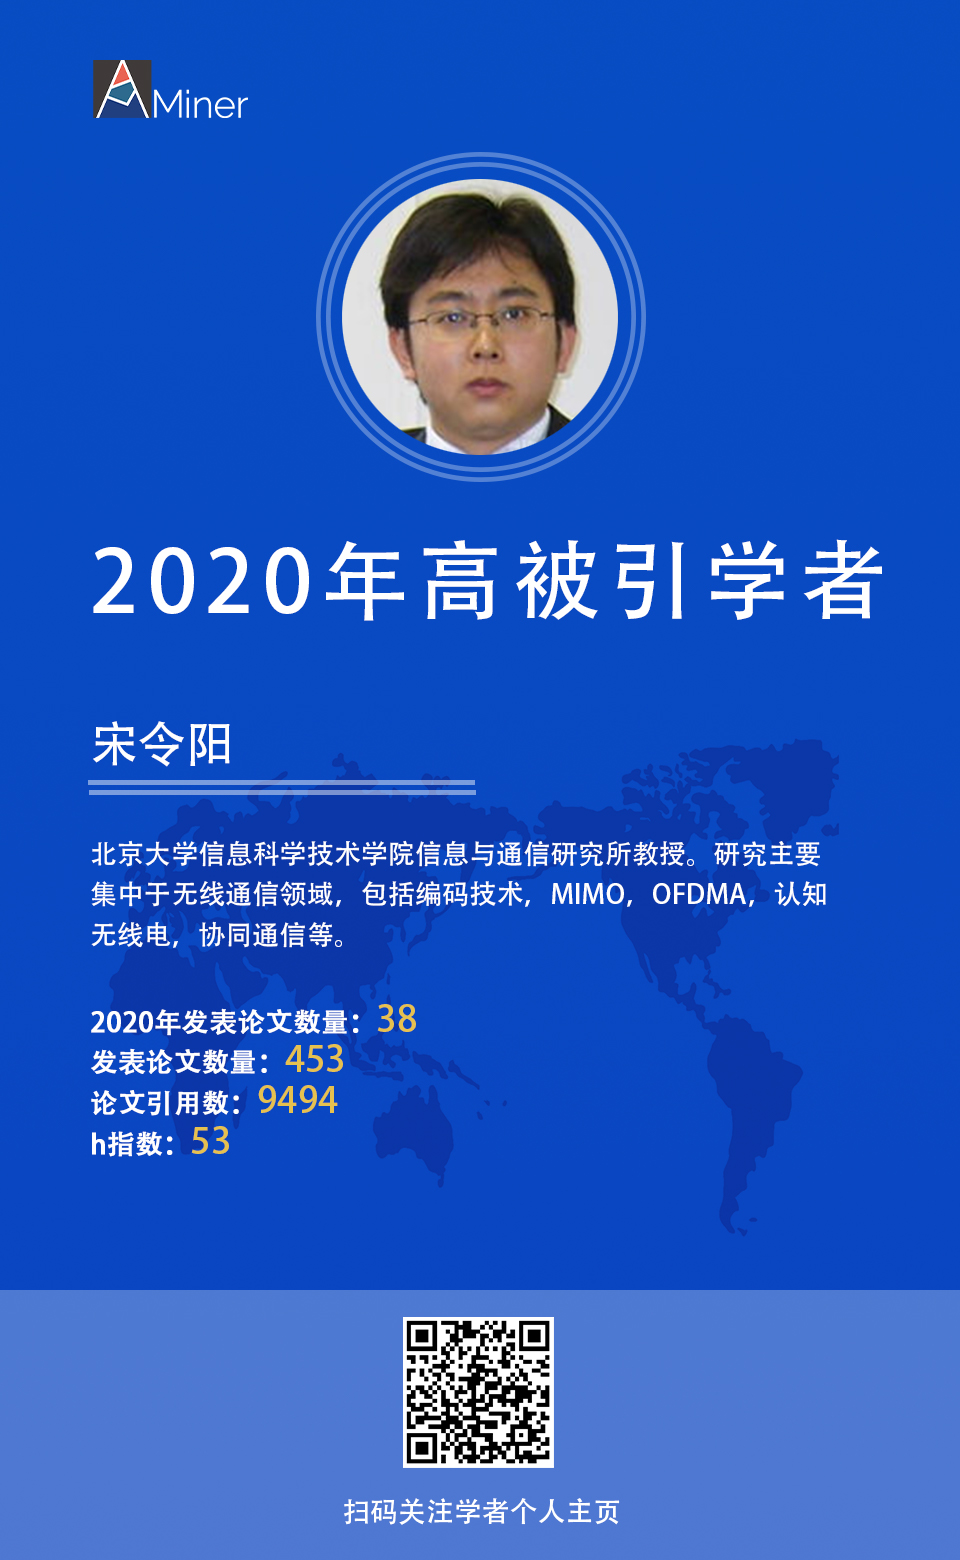 2020年高被引学者】 宋令阳北京大学_lingyang song 北大-CSDN博客